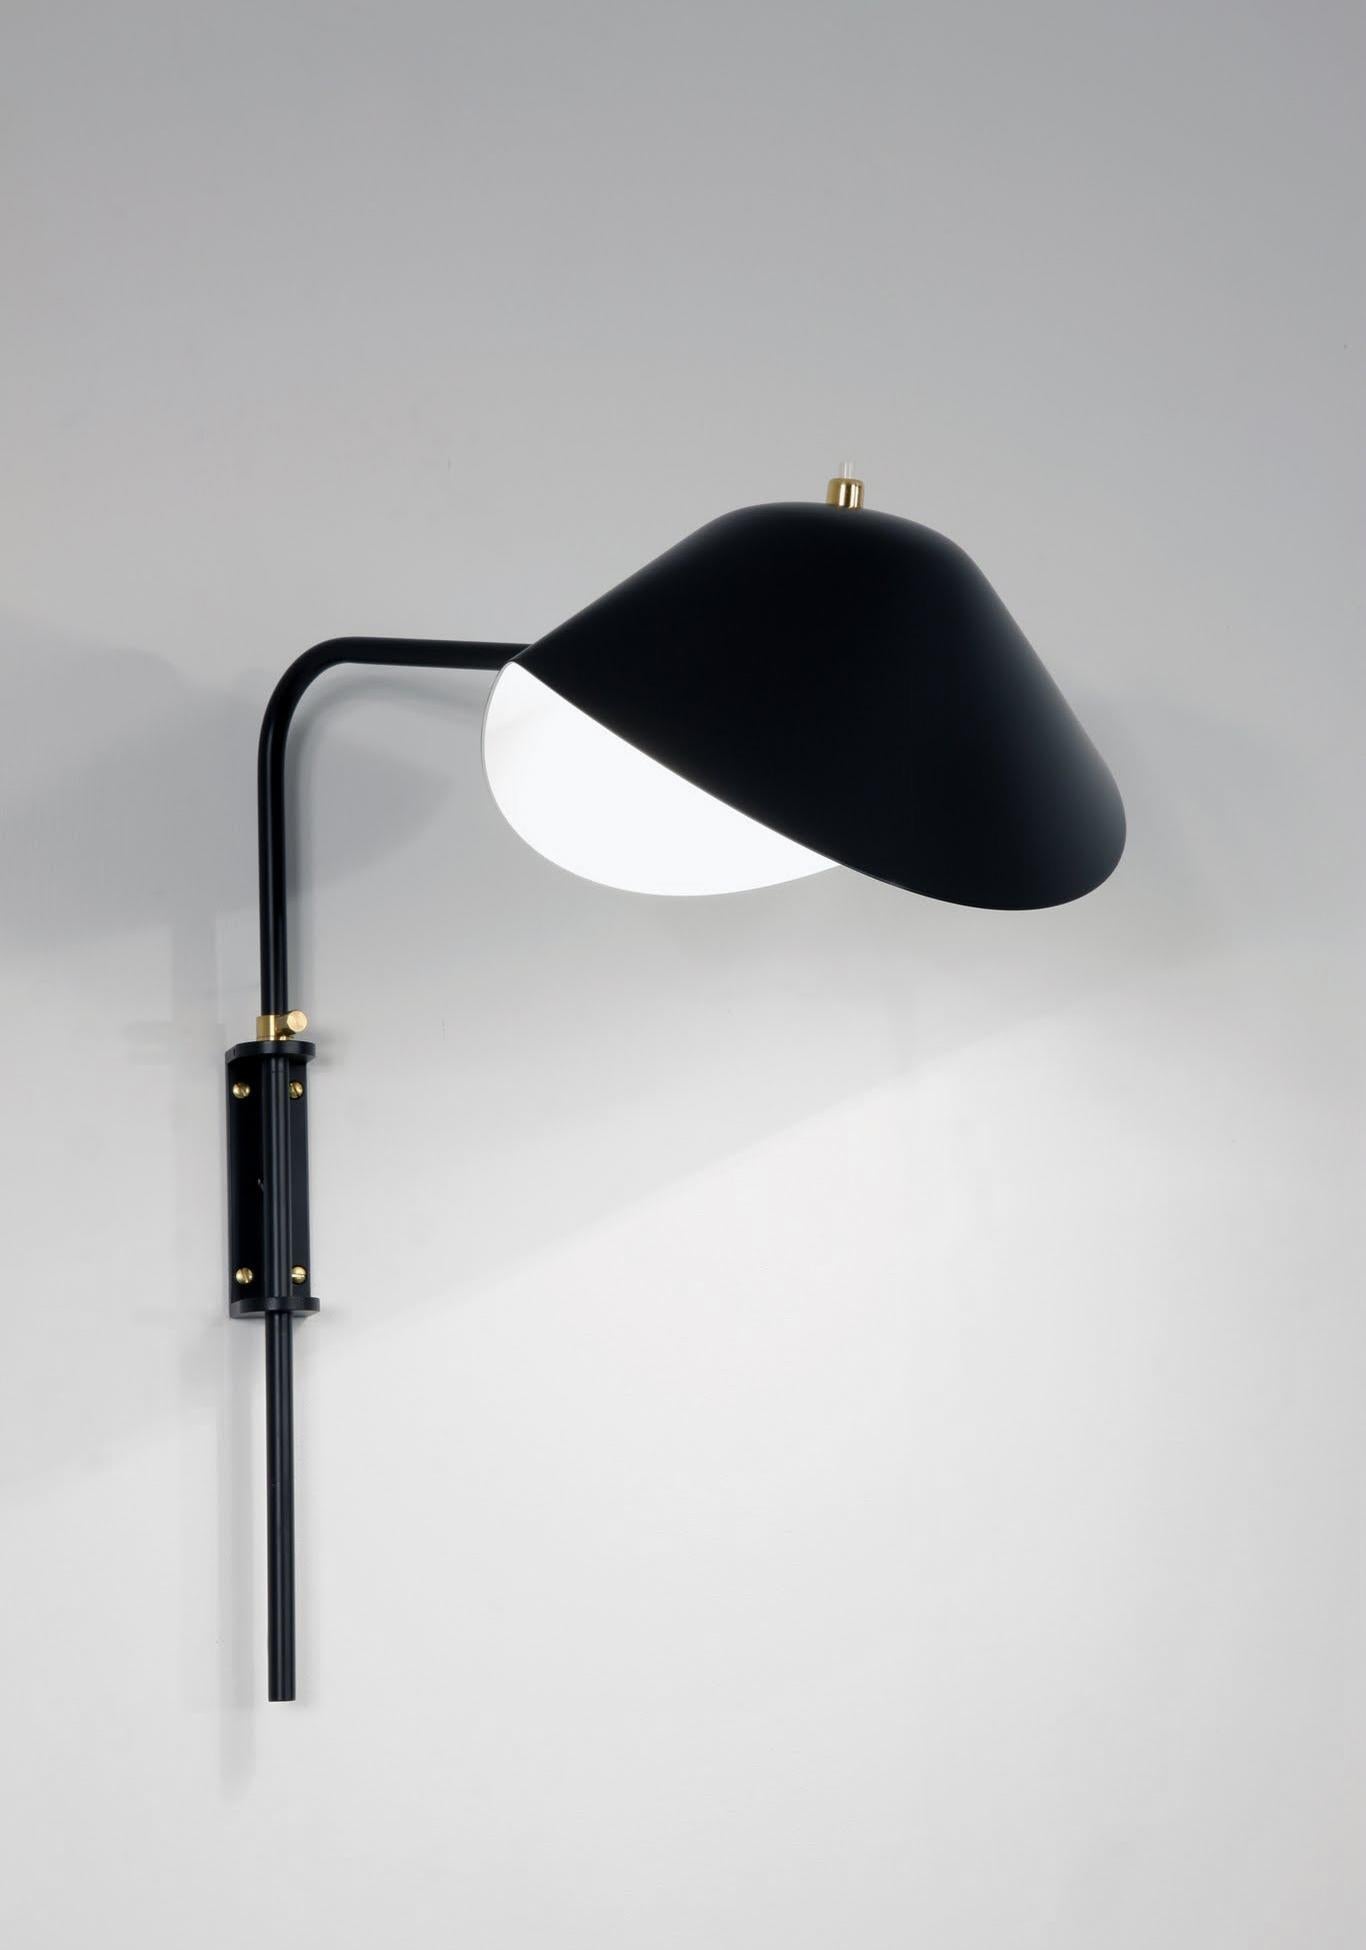 Wandleuchte Modell 'Anthony Wall Lamp Whit Fixing Bracket', entworfen von Serge Mouille im Jahr 1952.

Hergestellt von Editions Serge Mouille in Frankreich. Die Herstellung der Lampen, Wandleuchten und Stehlampen erfolgt in handwerklicher Weise mit